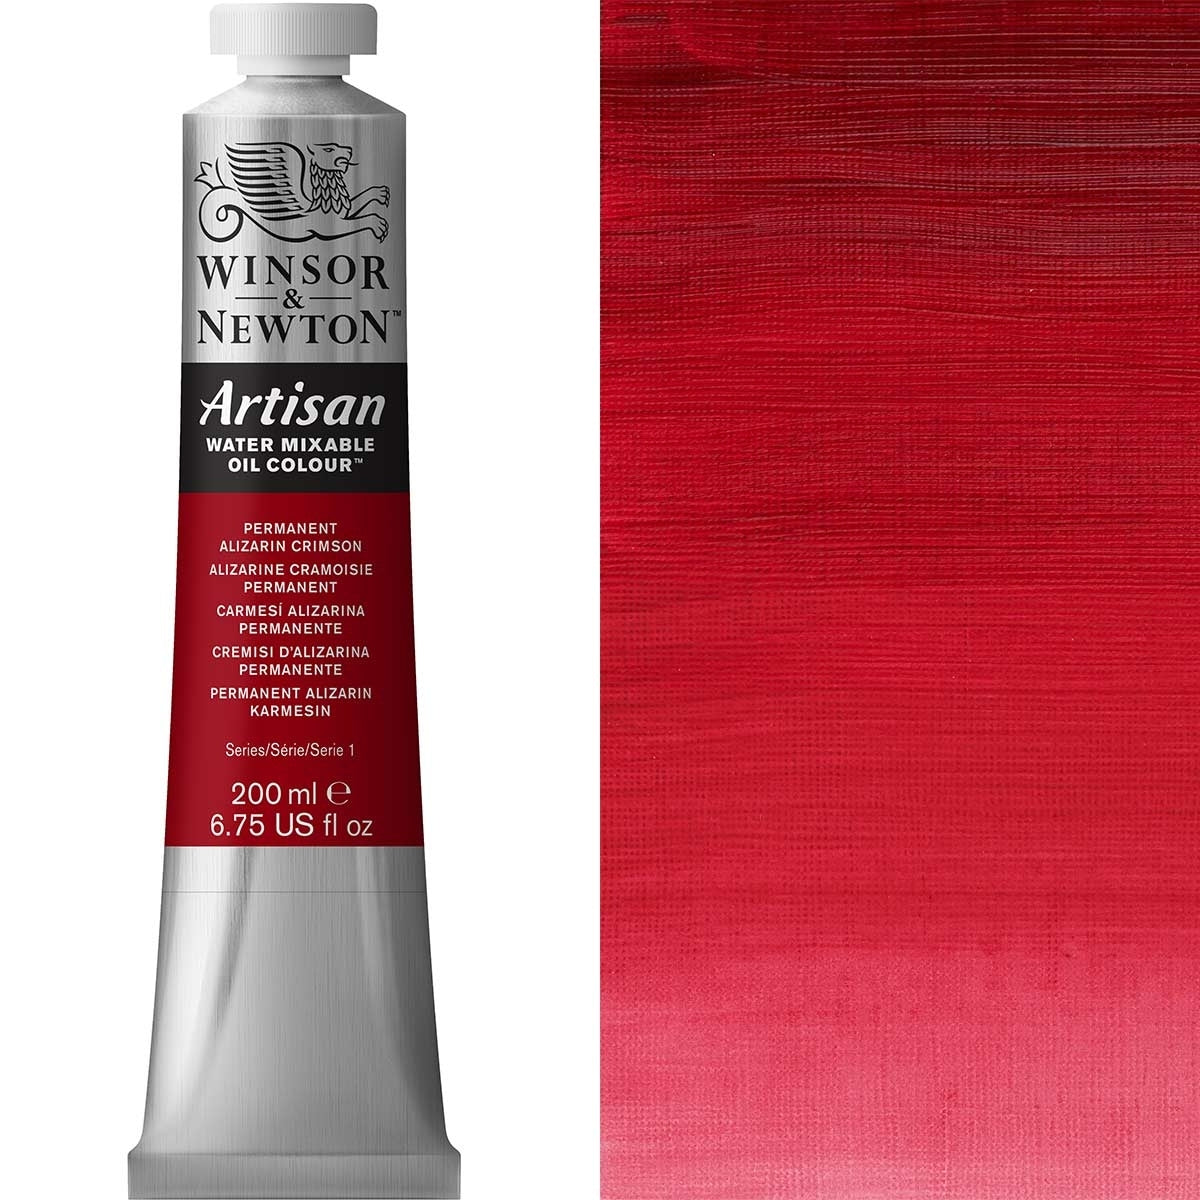 Winsor e Newton - Watermixable di colore olio artigianale - 200 ml - Alizarin Crimson permanente